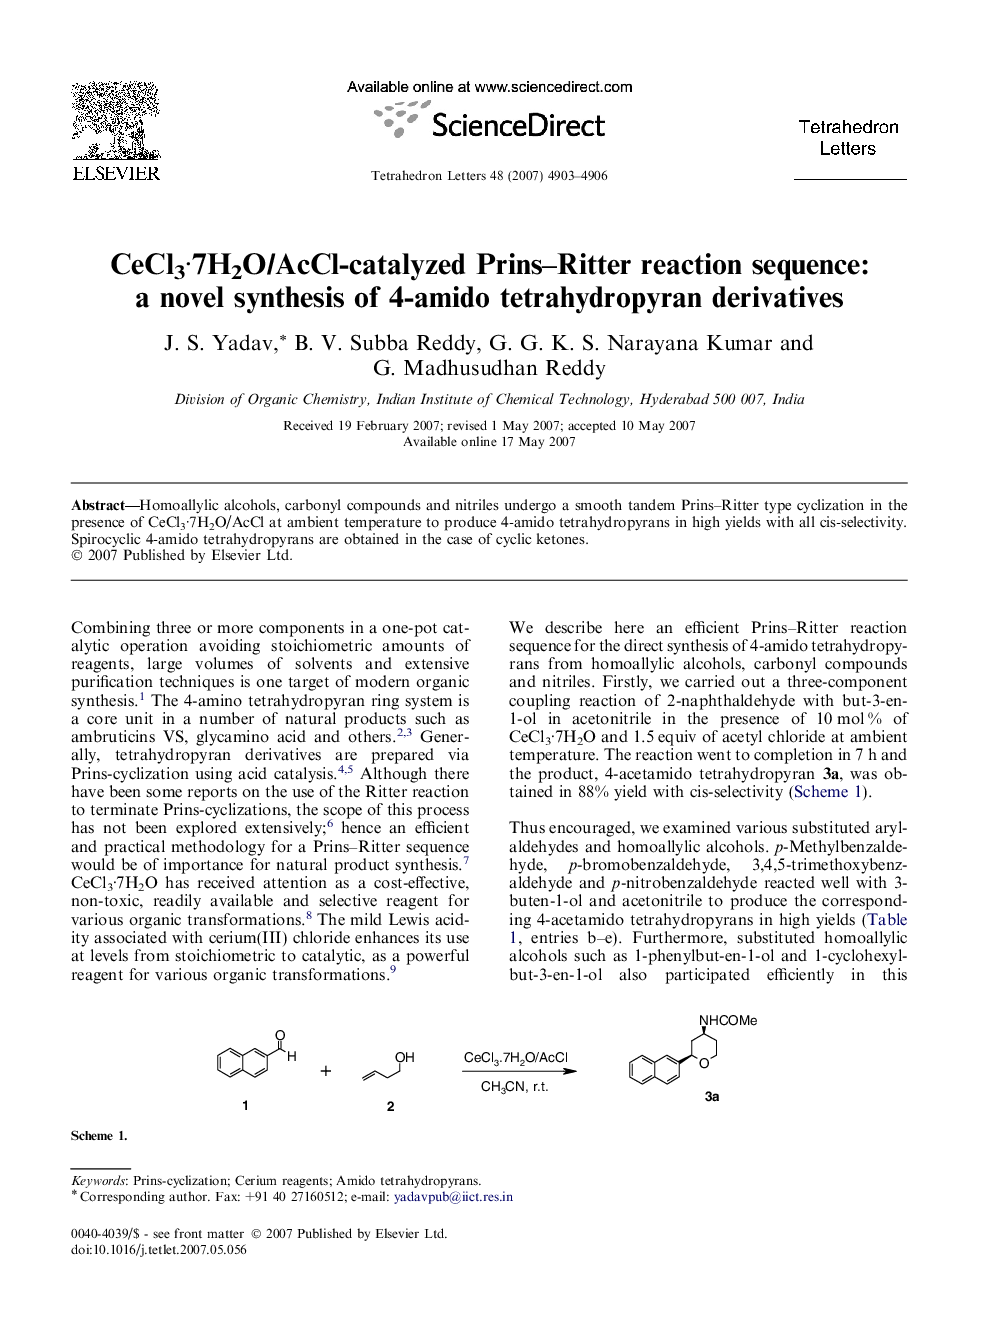 CeCl3Â·7H2O/AcCl-catalyzed Prins-Ritter reaction sequence: a novel synthesis of 4-amido tetrahydropyran derivatives